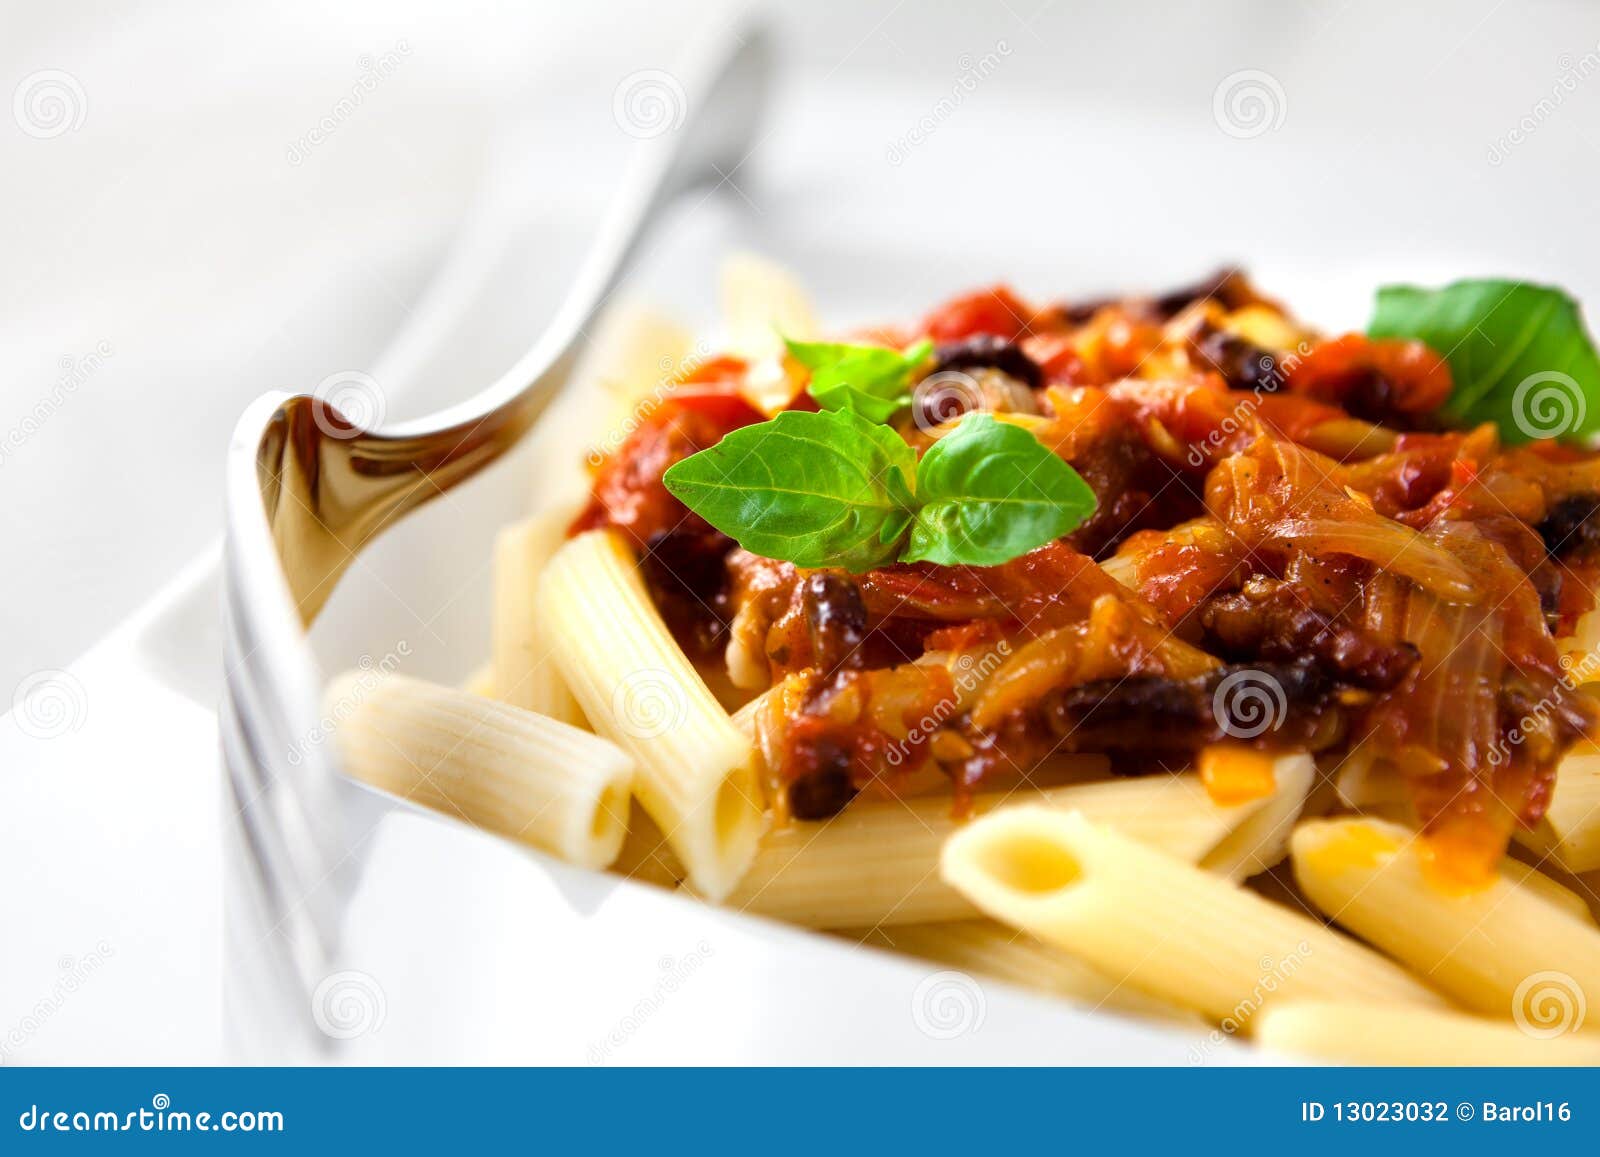 De Deegwaren Van Penne Met Tomaten En Pancetta Stock Foto - Image of ...